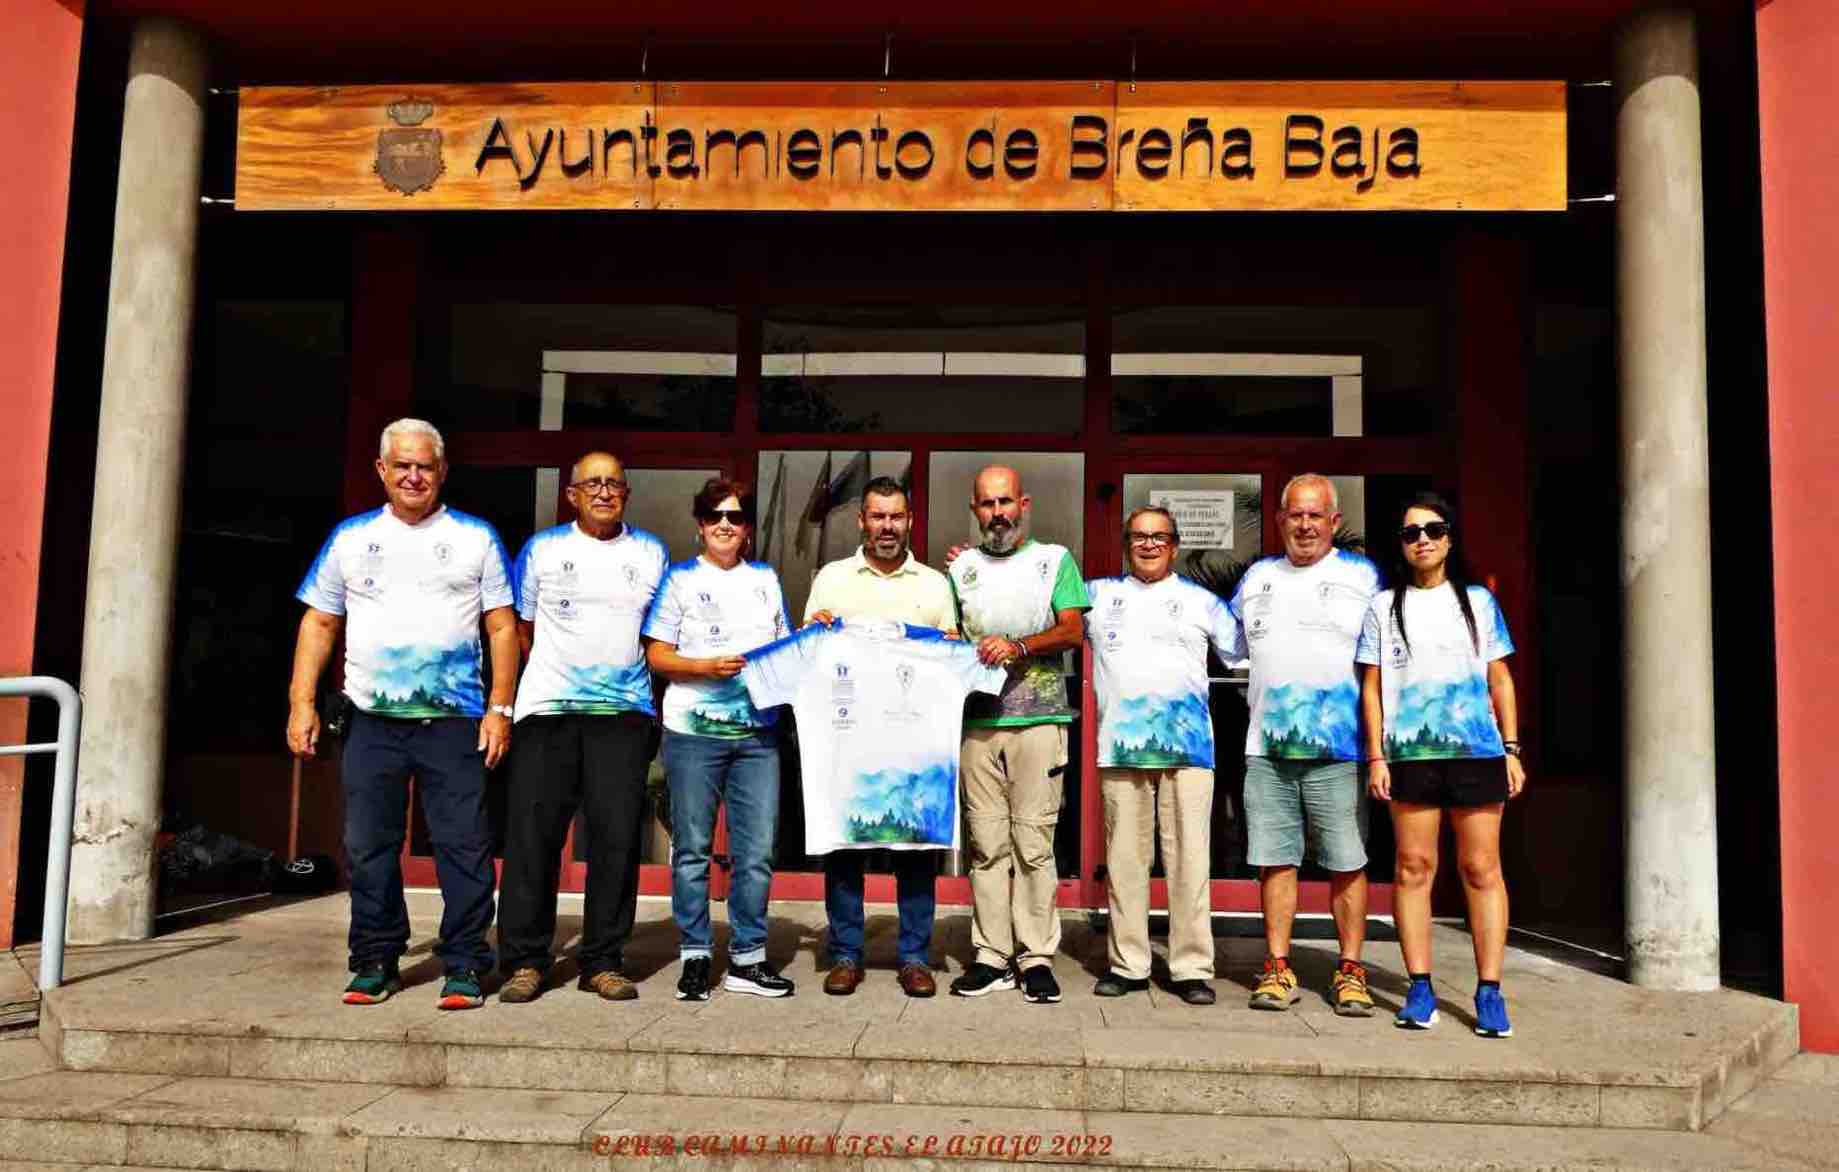 En el día de ayer se presentó en el Ayuntamiento de Breña Baja, la nueva camiseta que portará el equipo de corredores de Caminantes El Atajo, el cual pertenece a este municipio